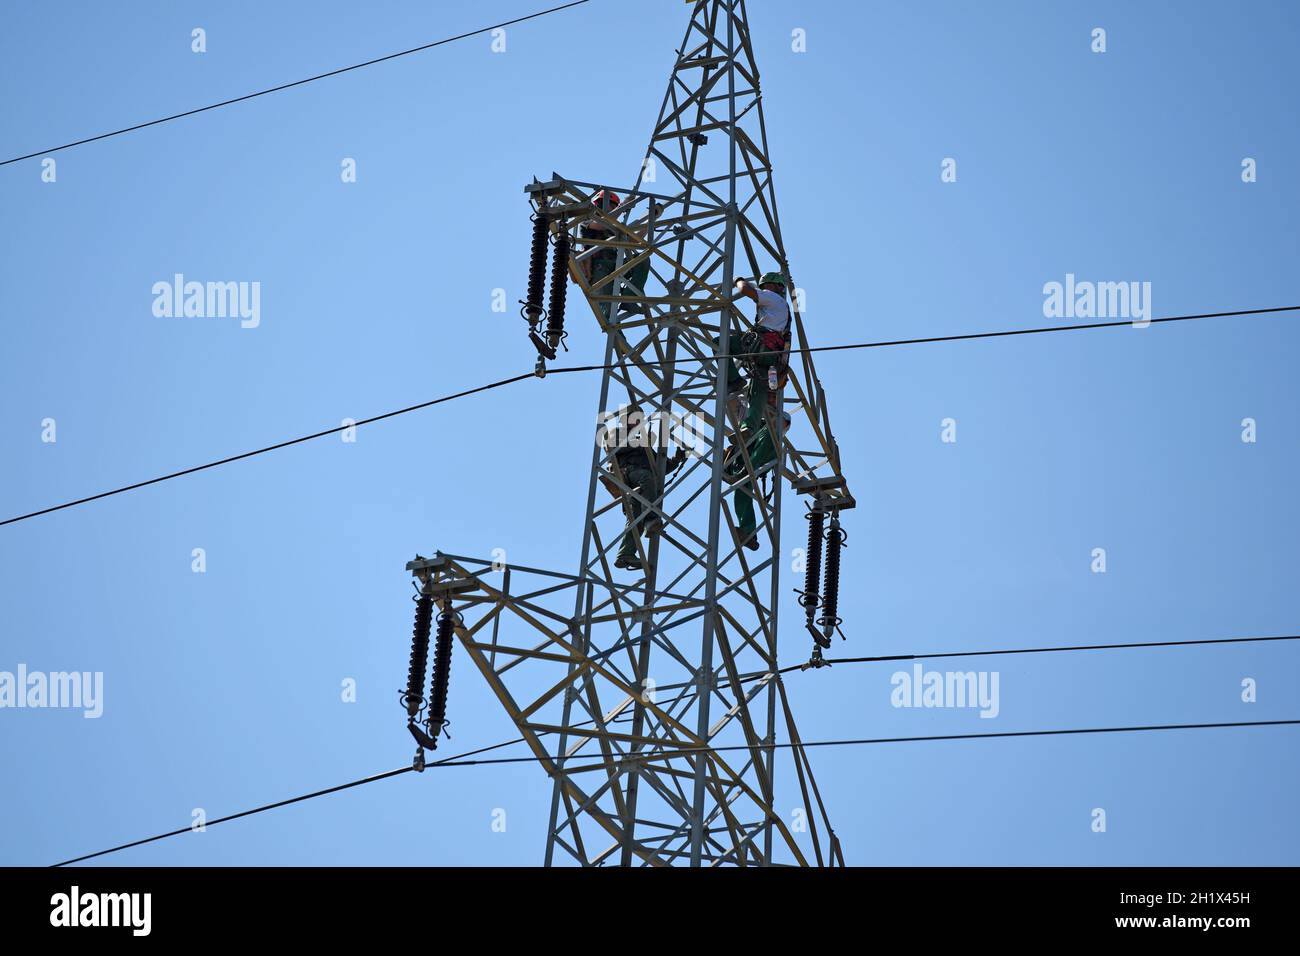 Arbeiter auf einem Hochspannungsmast, Oberösterreich, Österreich, Europa - Trabajadores en un pilón de alta tensión, Alta Austria, Austria, Europa Foto de stock